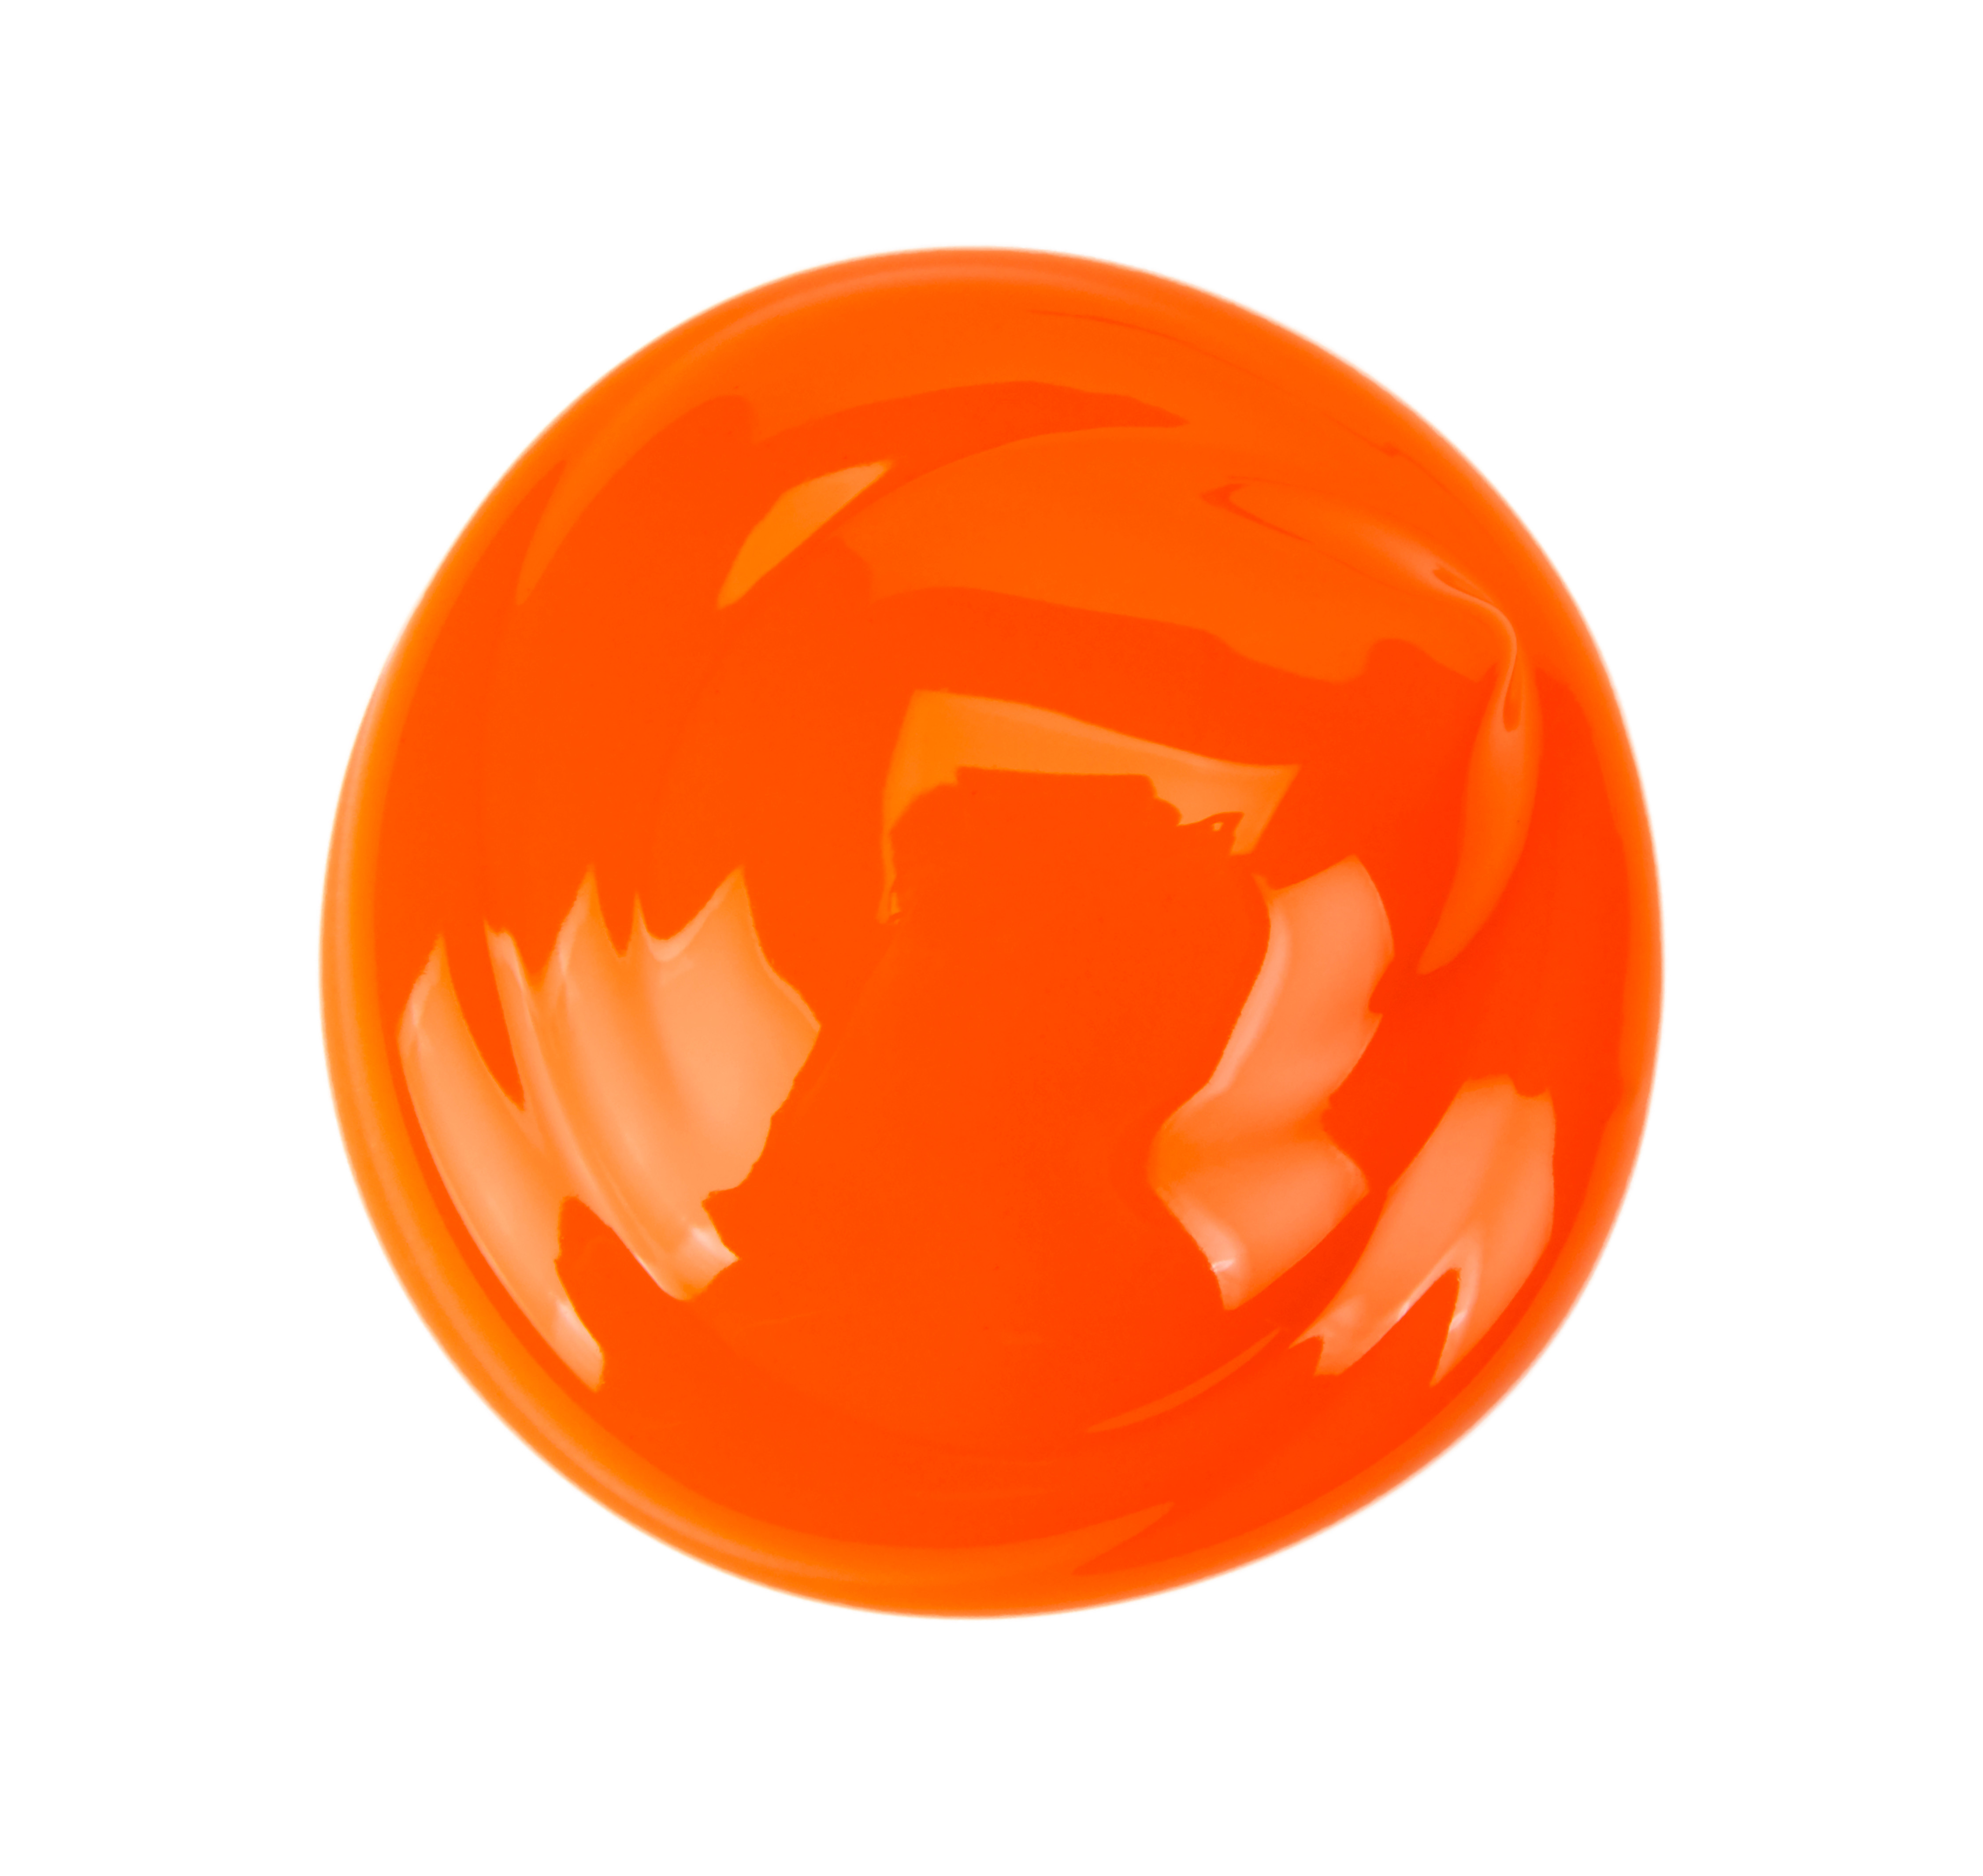 Crayola Orange Washable Tempera Paint, 32 Ounce Squeeze Bottle - image 5 of 8